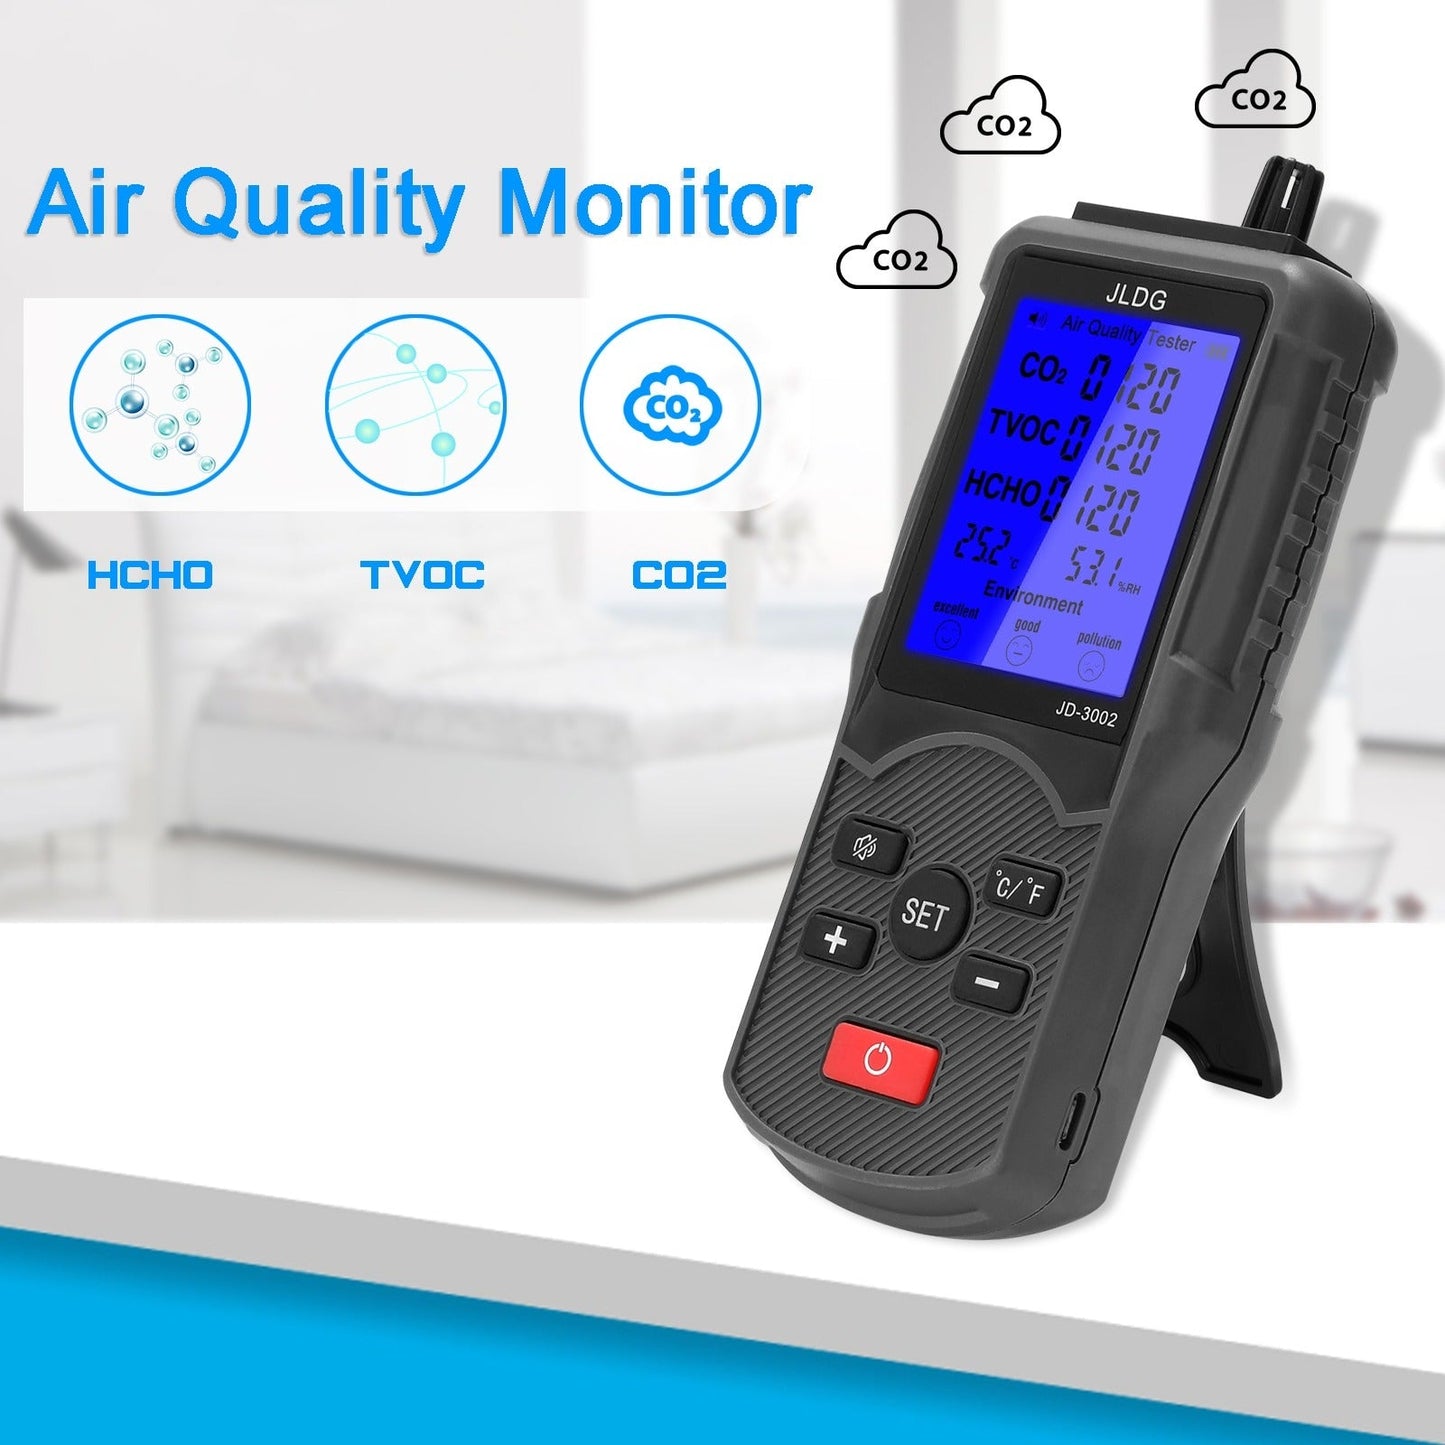 JLDG Air Quality Tester - CO² Meter - VOC Meter - Formaldehyde Meter - 3-in-1 - Draagbaar - LCD Display